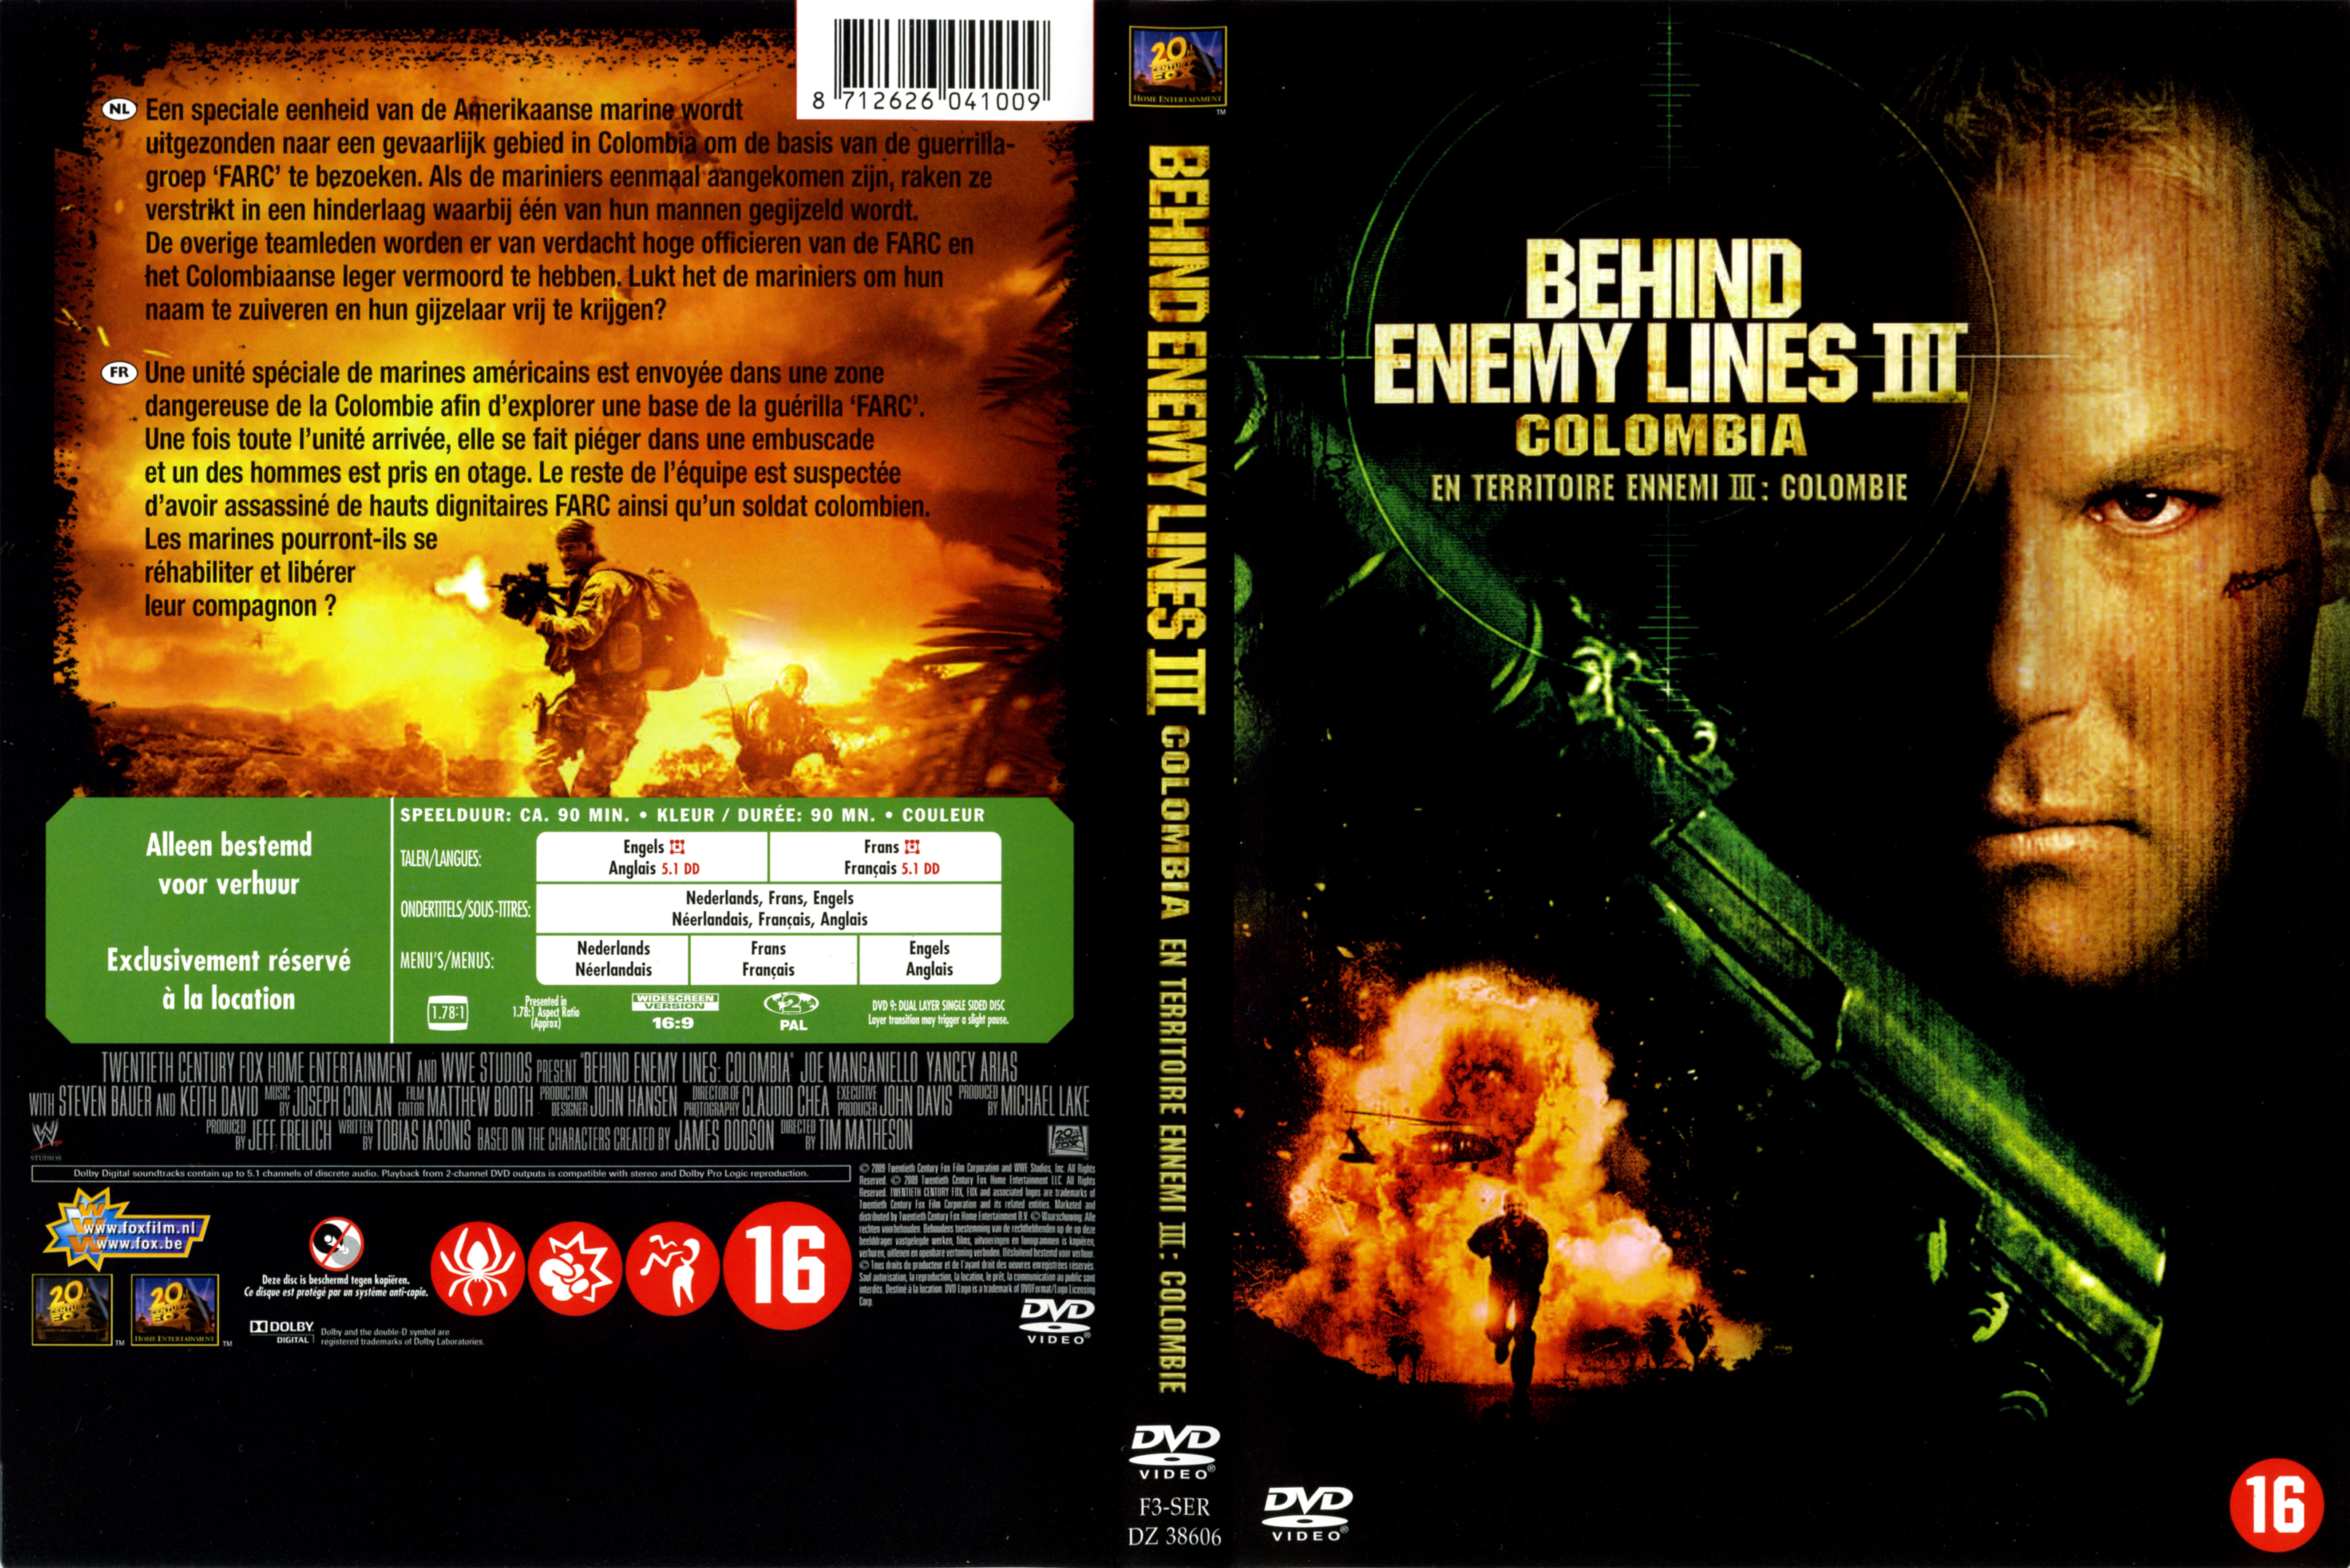 Jaquette DVD En territoire ennemi 3 Colombie